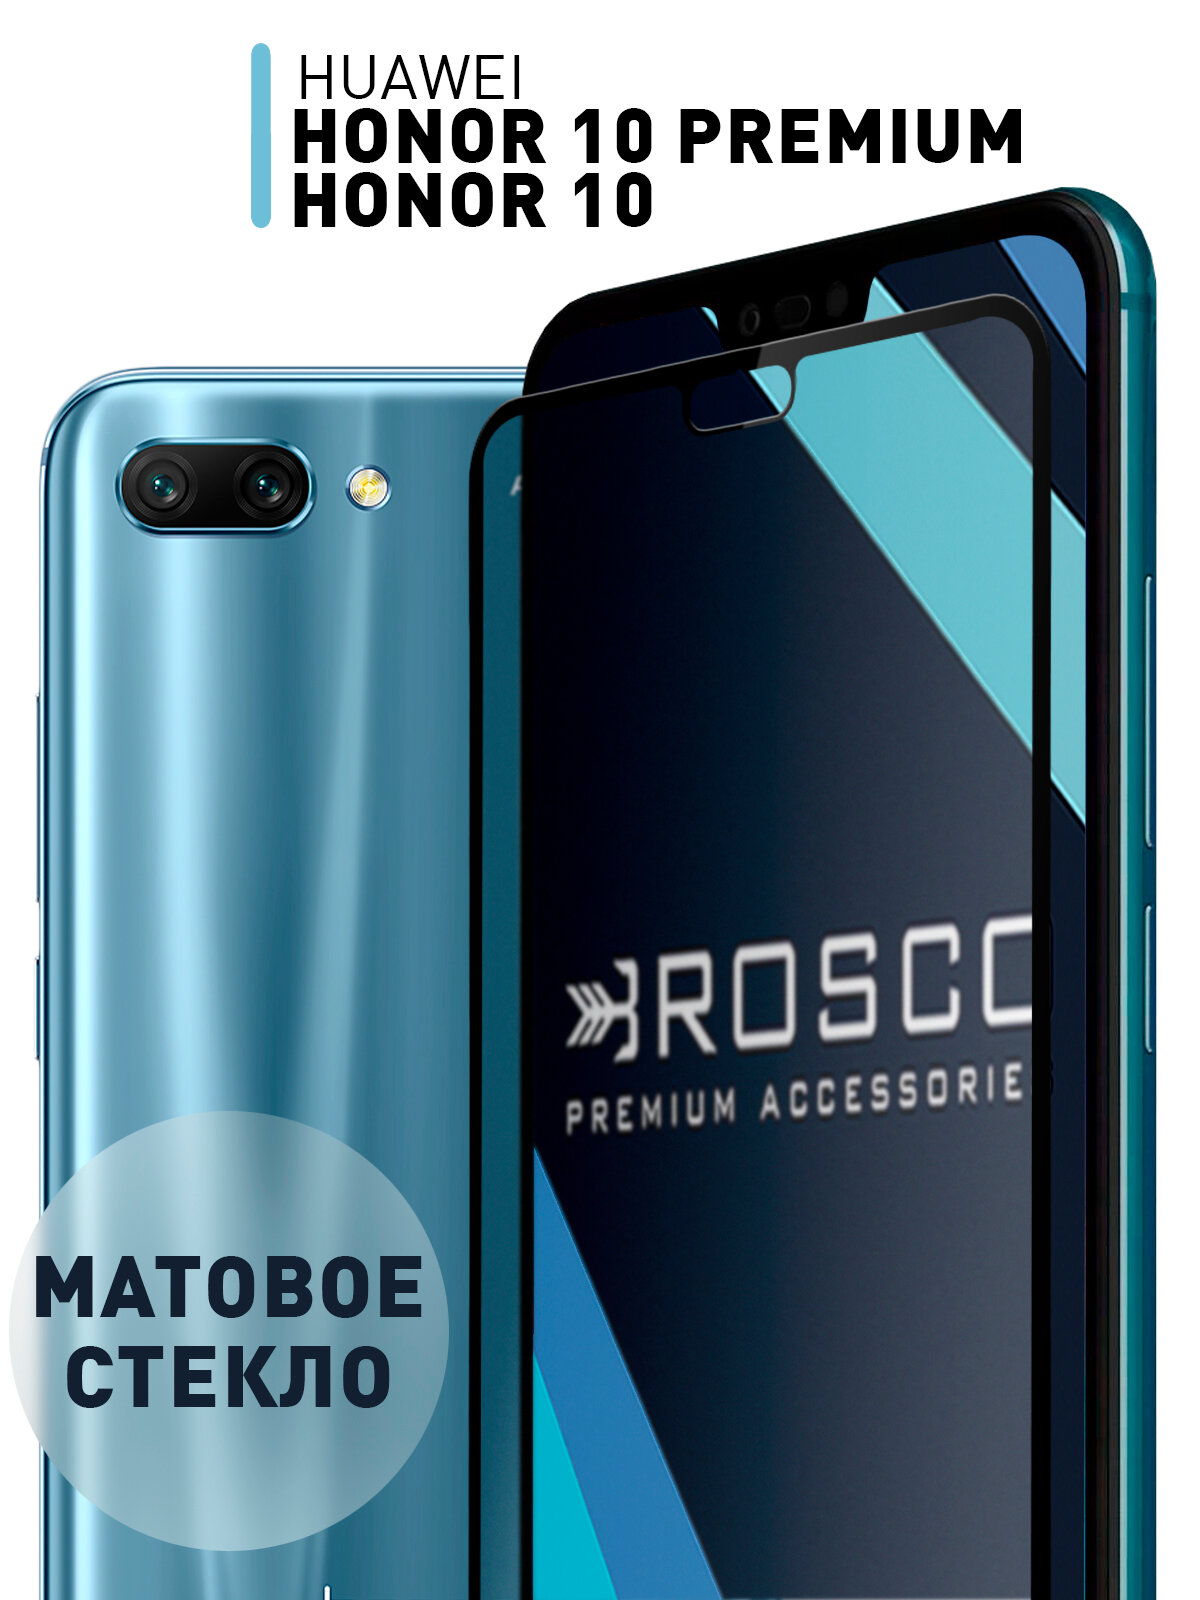 Матовое стекло для Honor 10 и Honor 10 Premium (Хонор 10 и 10 Премиум) закаленное защитное легко наклеить прозрачное стекло ROSCO